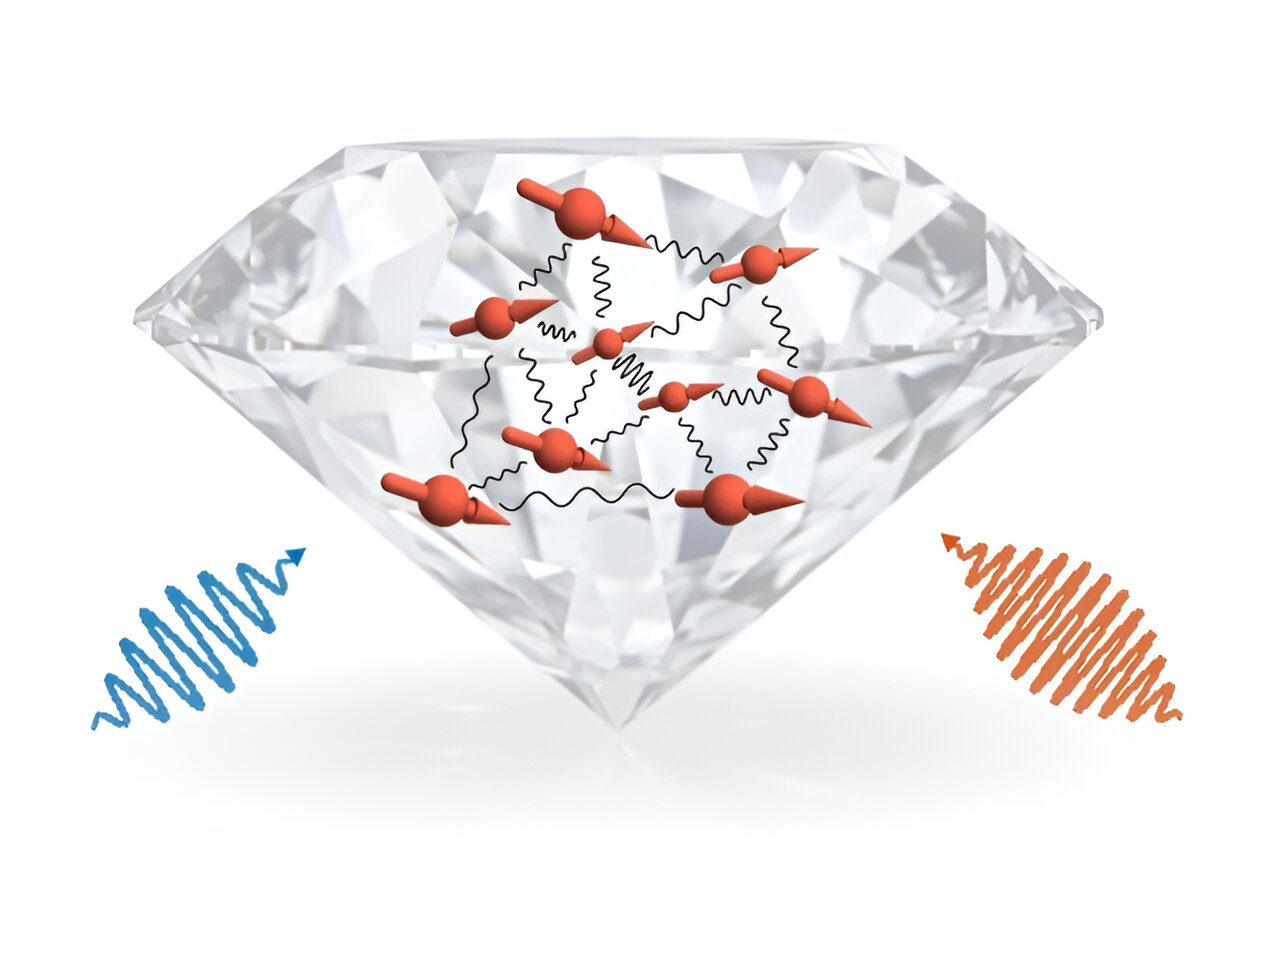 Výzkumníci se snaží proměnit diamant v kvantový simulátor